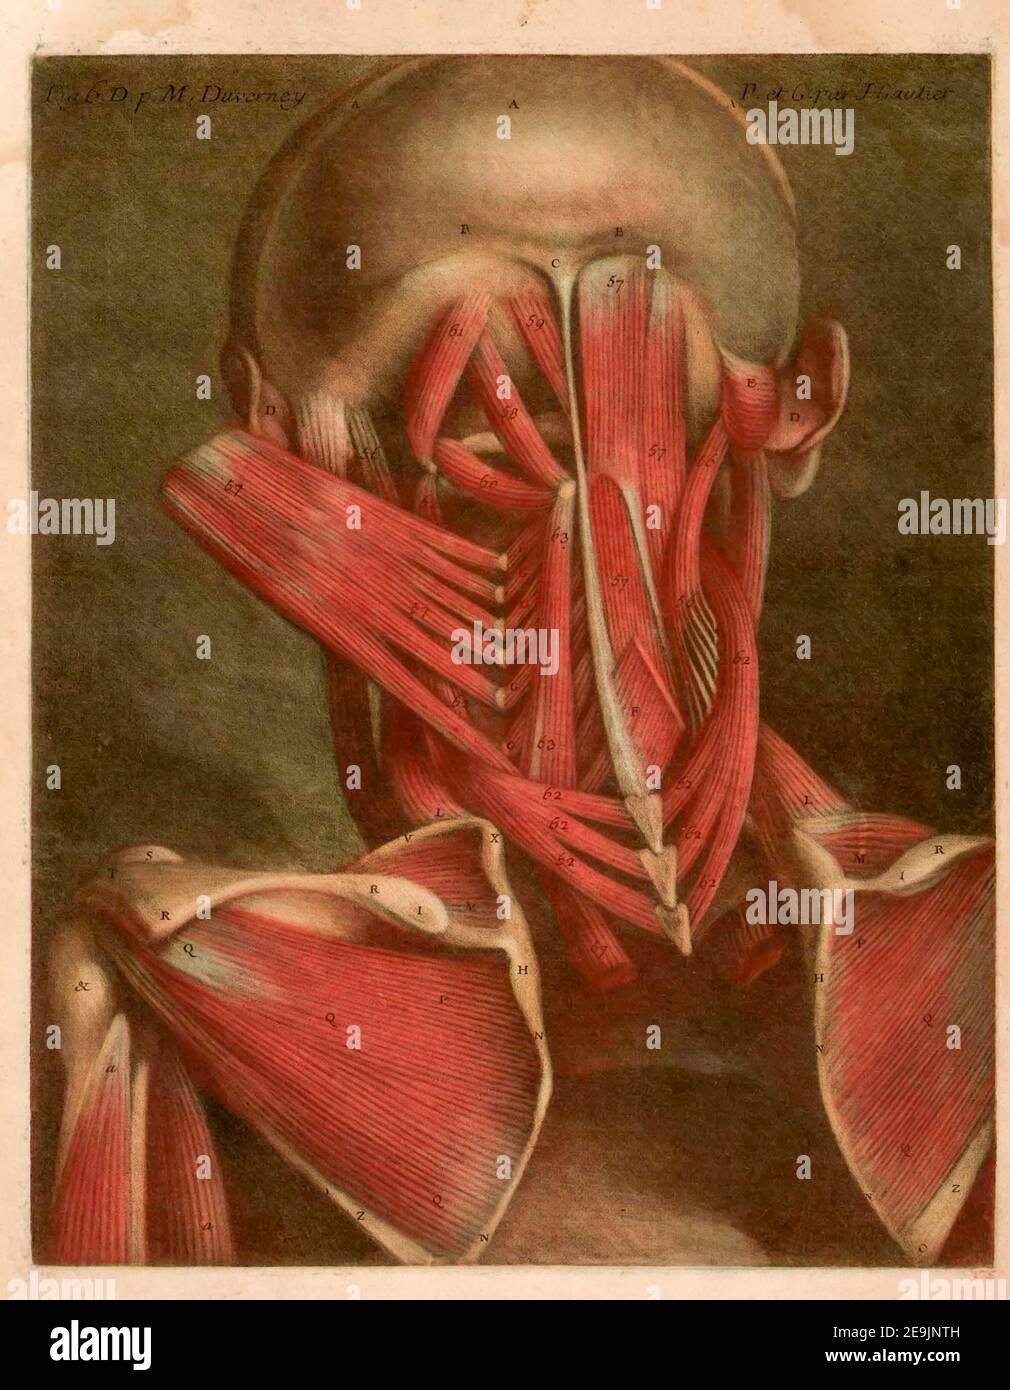 Anatomie humaine l'essai d'anatomie a été produit par Gautier d'Agoty en 1745 à Paris, France. Il s'agit d'un atlas remarquablement détaillé de la tête, du cou et de l'épaule du corps humain avec un texte explicatif en français. Les images anatomiques ont été basées sur des cadavres humains disséqués par Joseph Duverney (1) et produits à l'aide de la méthode mezzotint de gravure et d'impression. L'impression de gravure Mezzotint a été inventée par Jaques Christophe le Bton en 1719. Les tirages Mezzotint (de l'expression italienne 'mezza tina' ou 'demi-ton') sont produits par la gravure d'une plaque métallique avec de nombreux petits trous qui Hol Banque D'Images